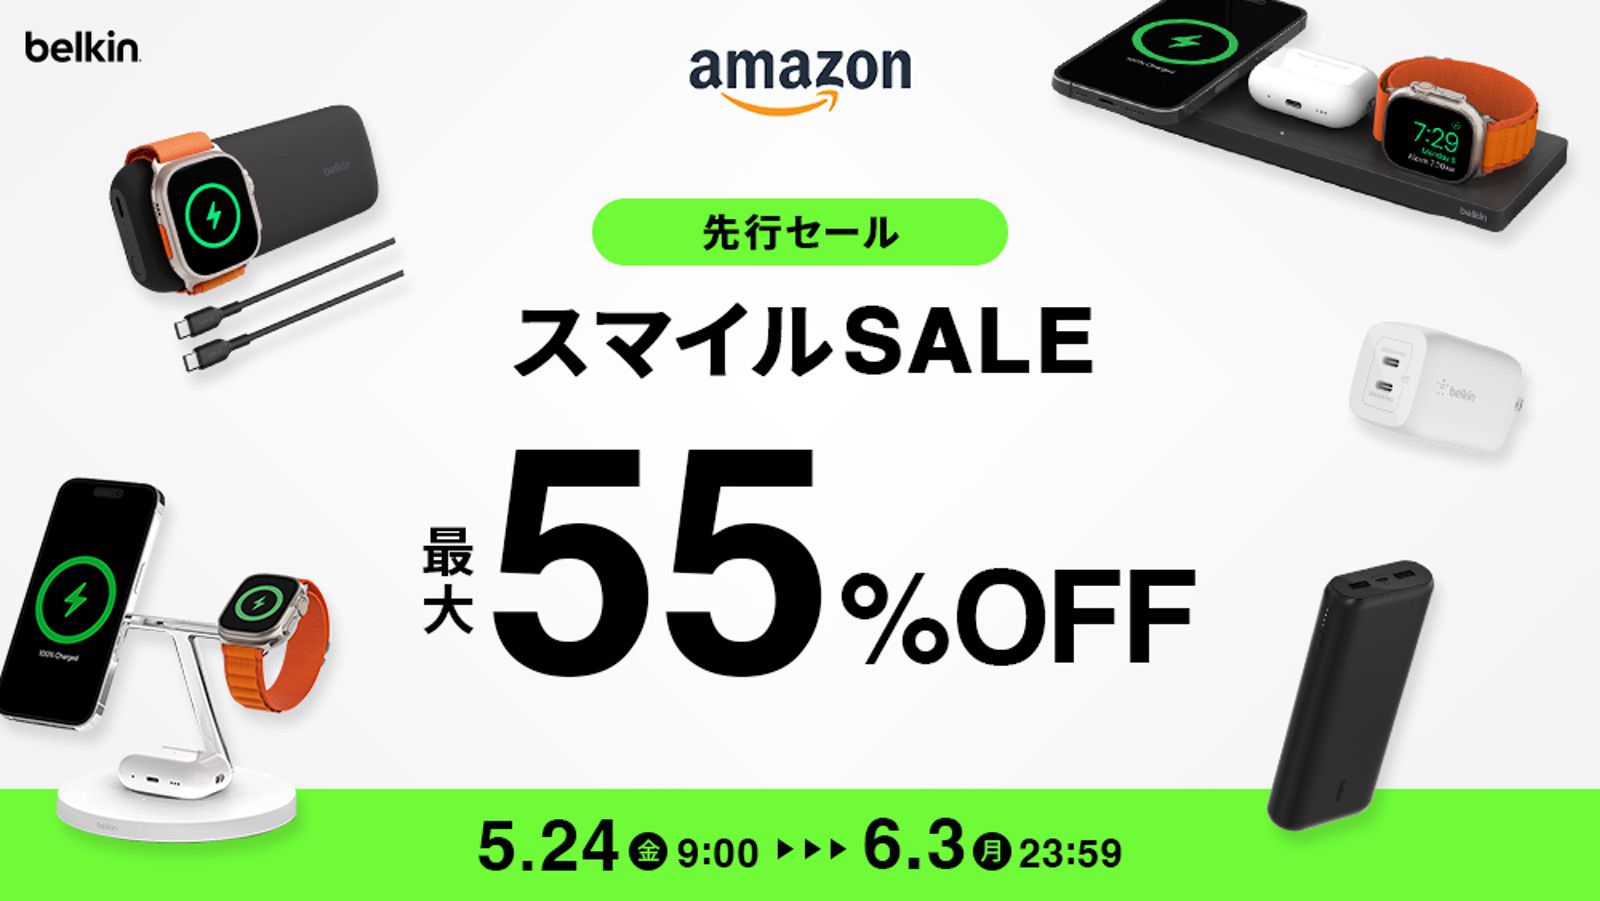 Belkin Sale Amazon 01